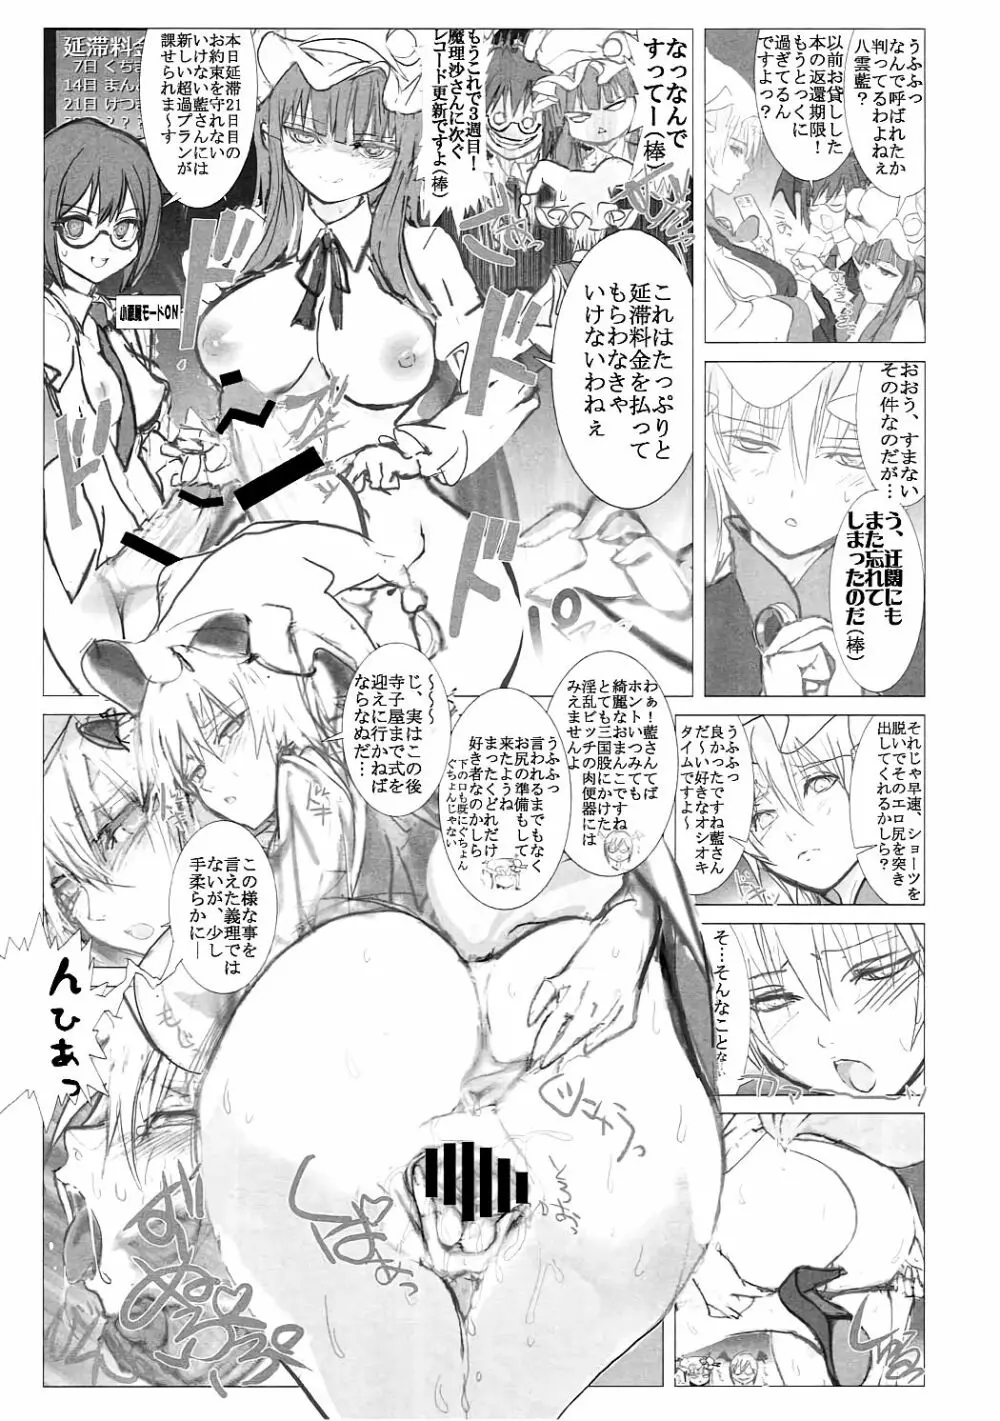 まるしき紅魔郷 パチュリー&小悪魔 Vol.2 17ページ